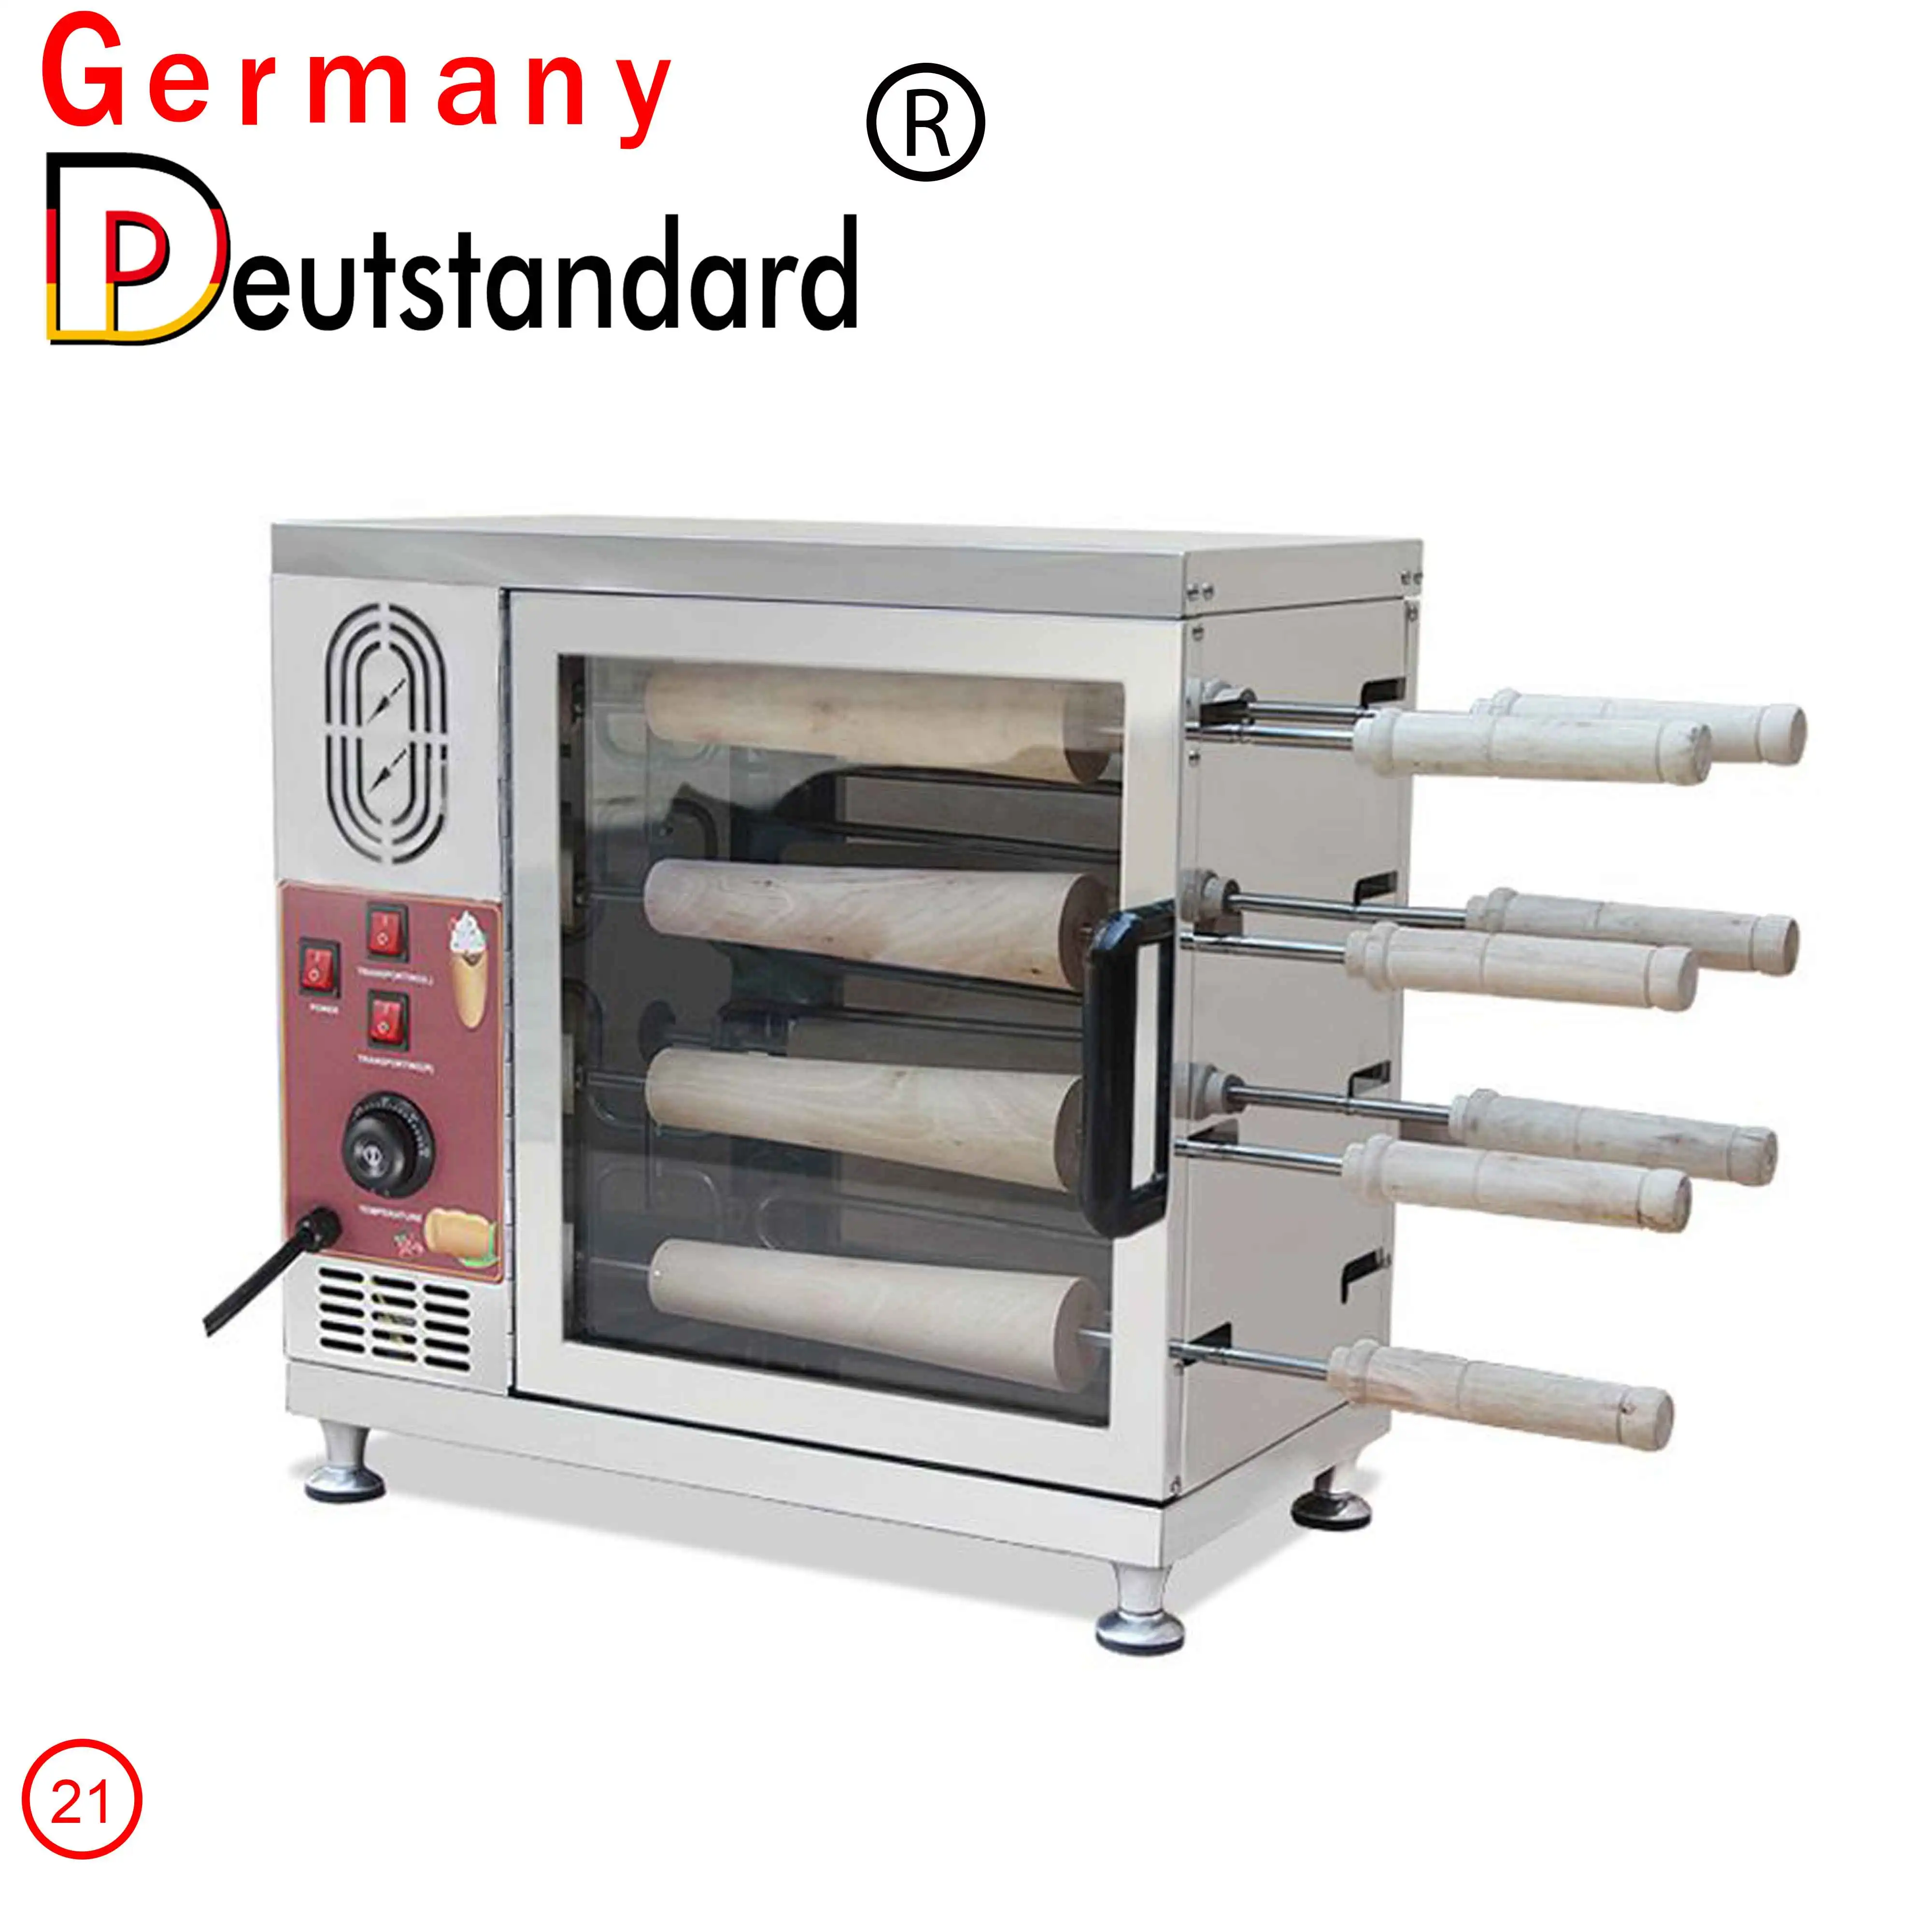 Немецкая дымоходная машина для торта kurto kalac дымоходная печь для торта, машина для продажи - Цвет: red and silver